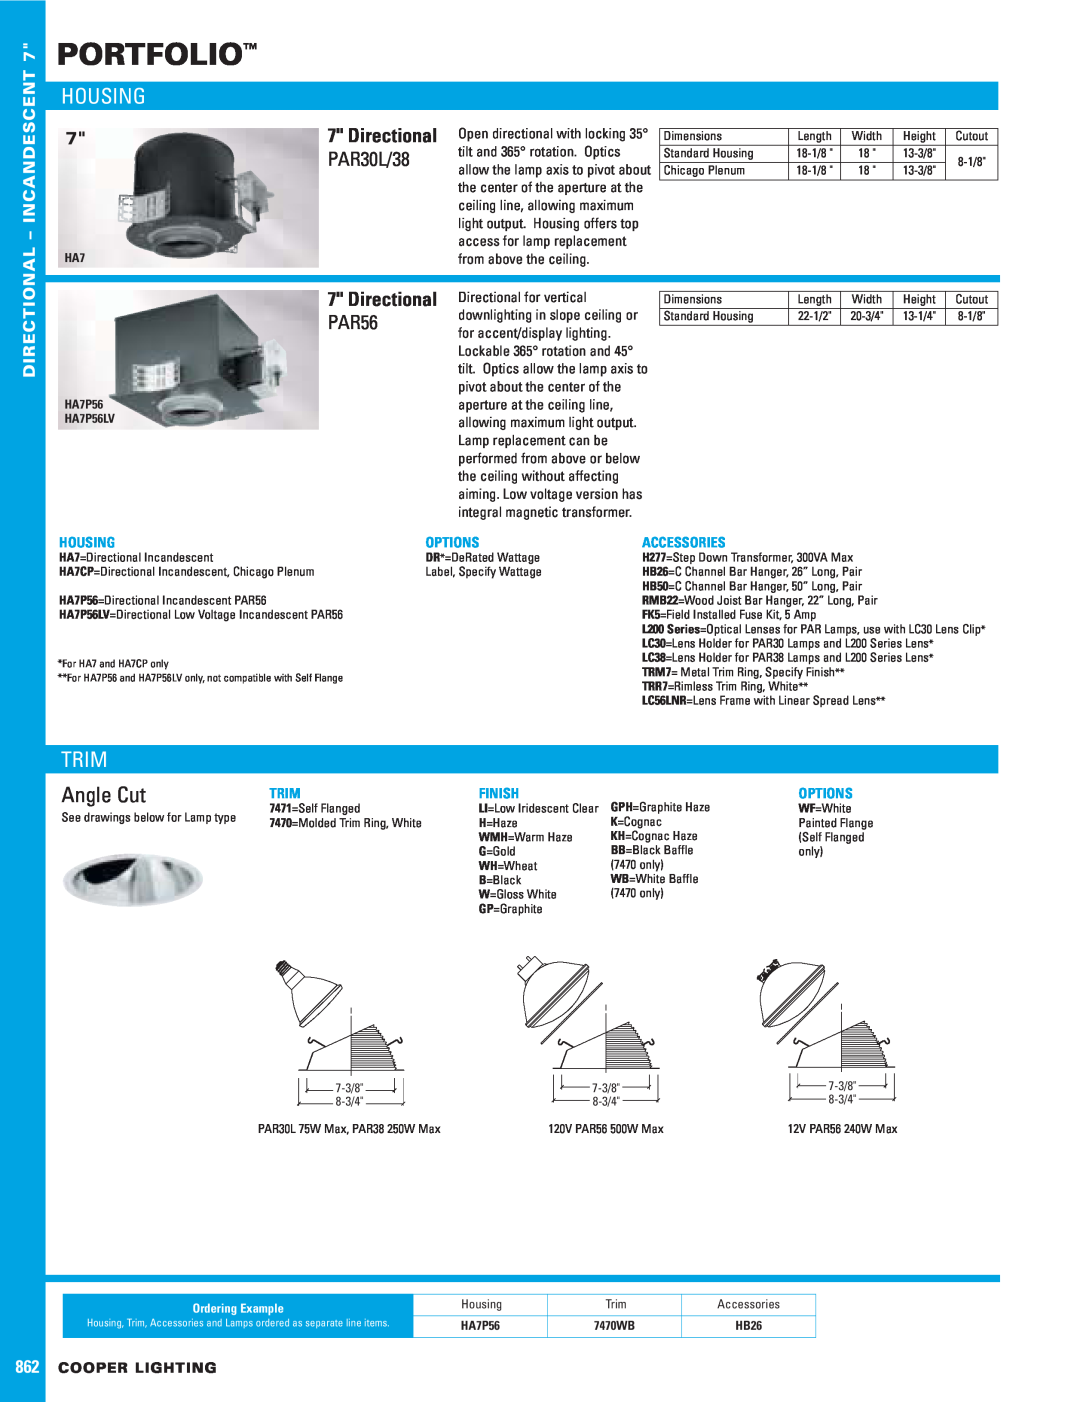 Cooper Lighting 7471 dimensions Portfolio, Housing, Trim, Angle Cut, PAR30L/38, Directional, PAR56, Incandescent, Options 